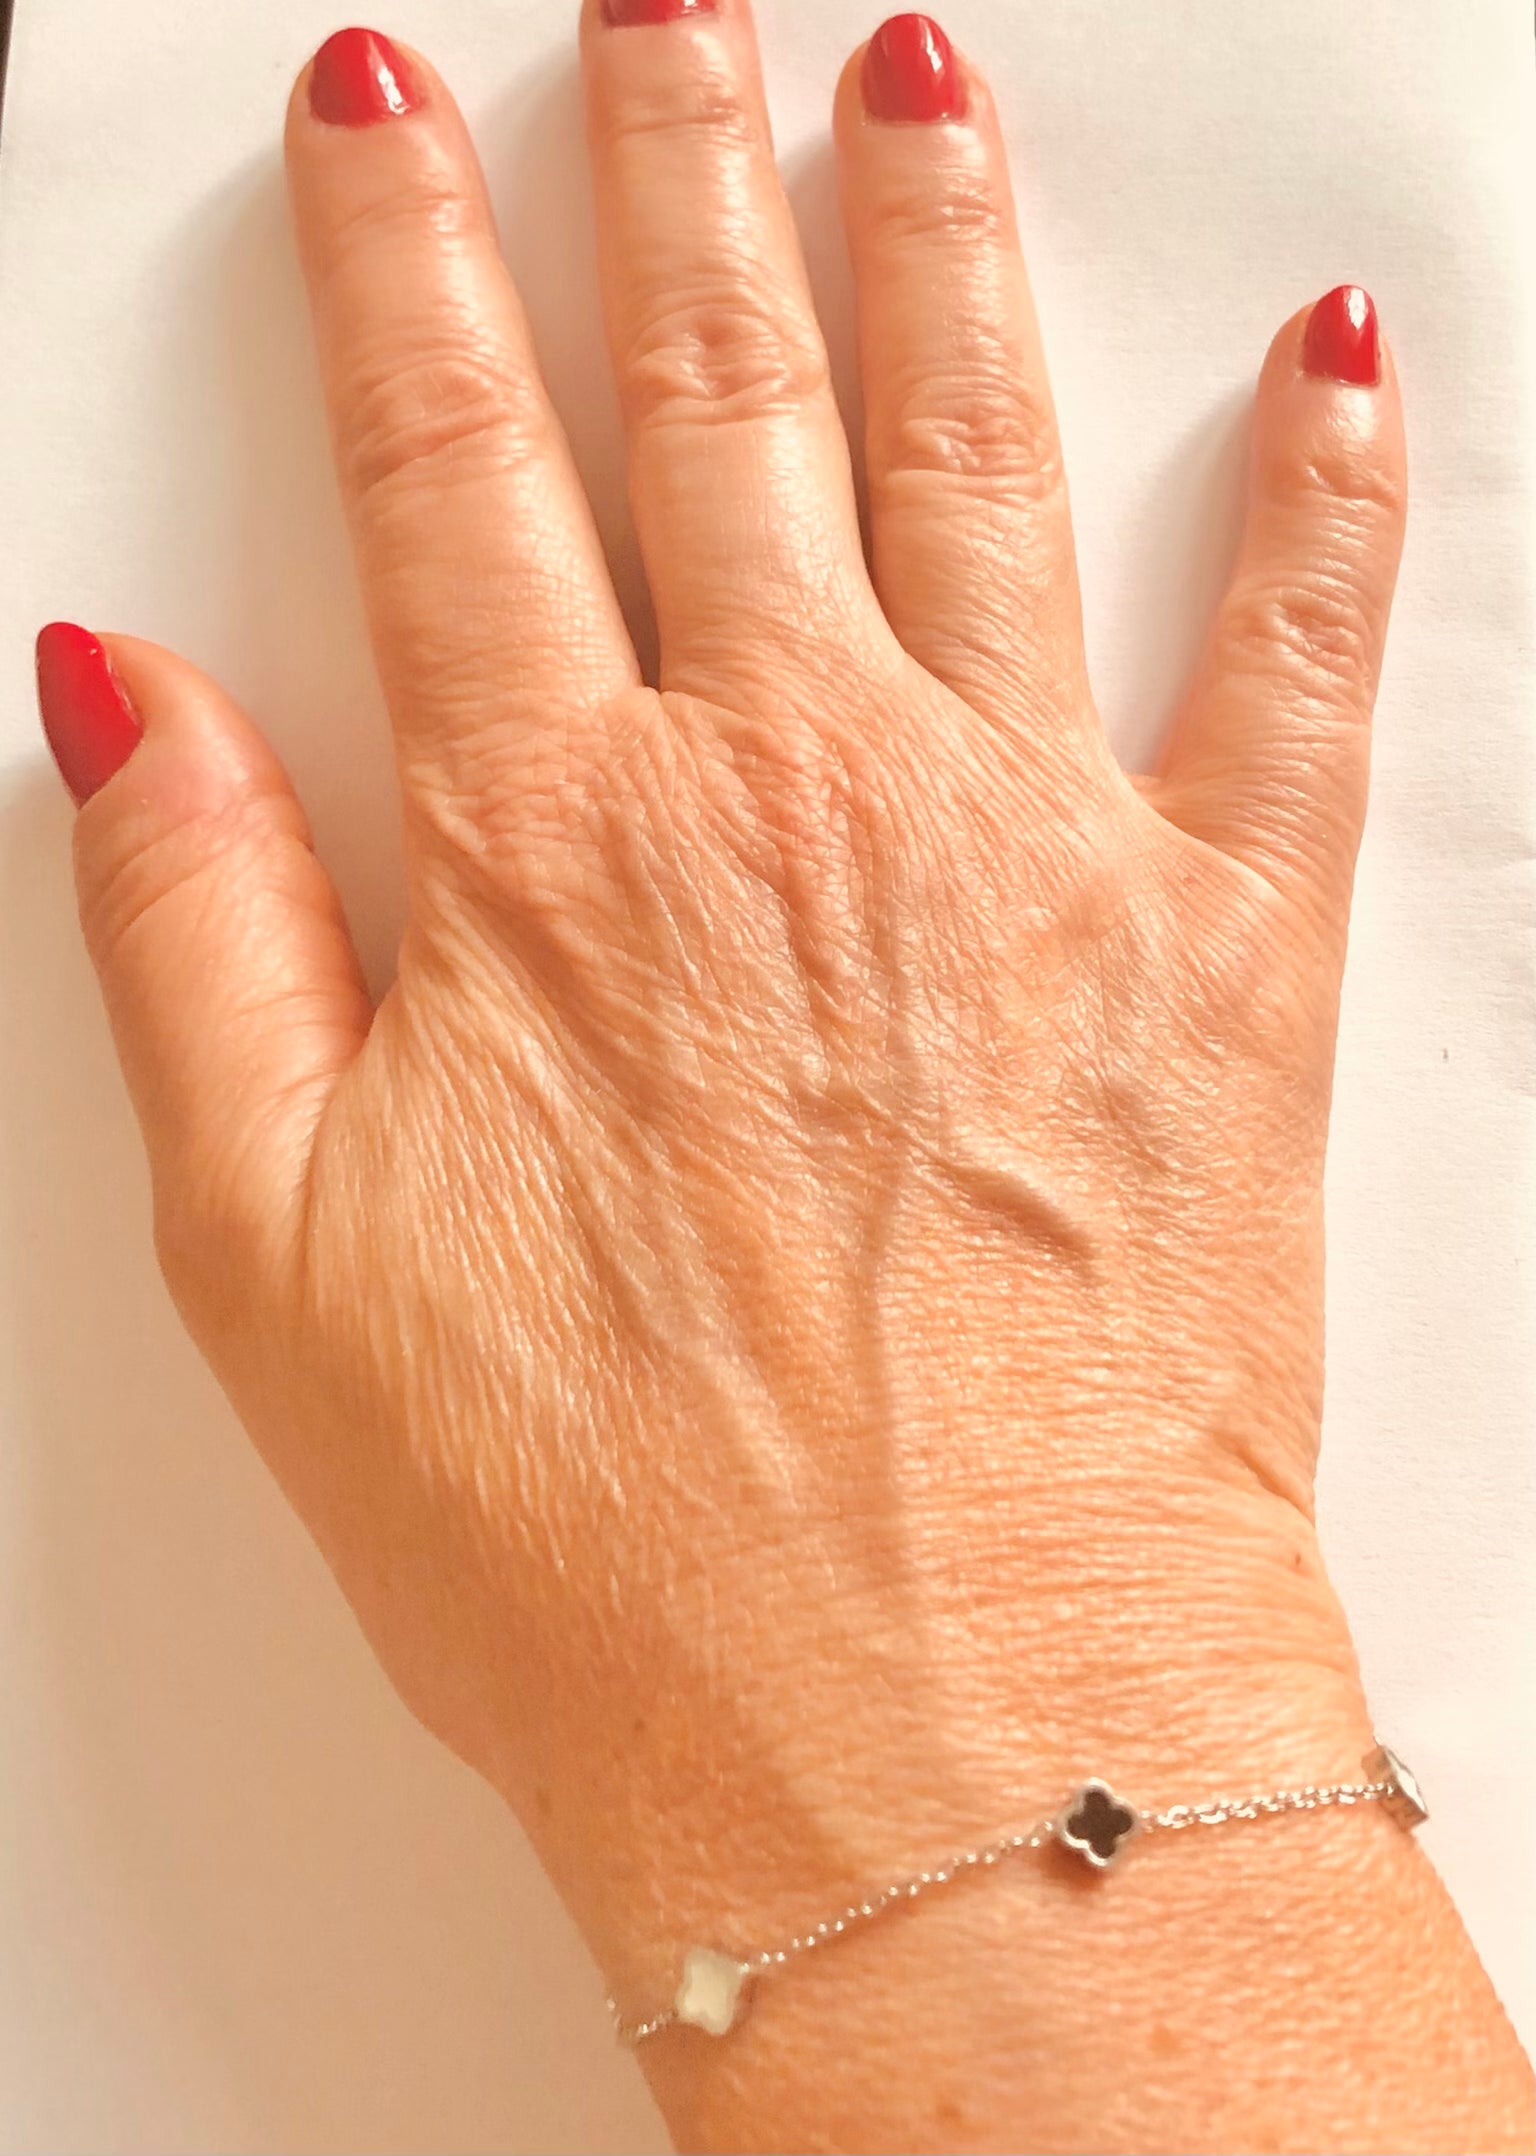 Collier et/ou bracelet motif « Trèfles »